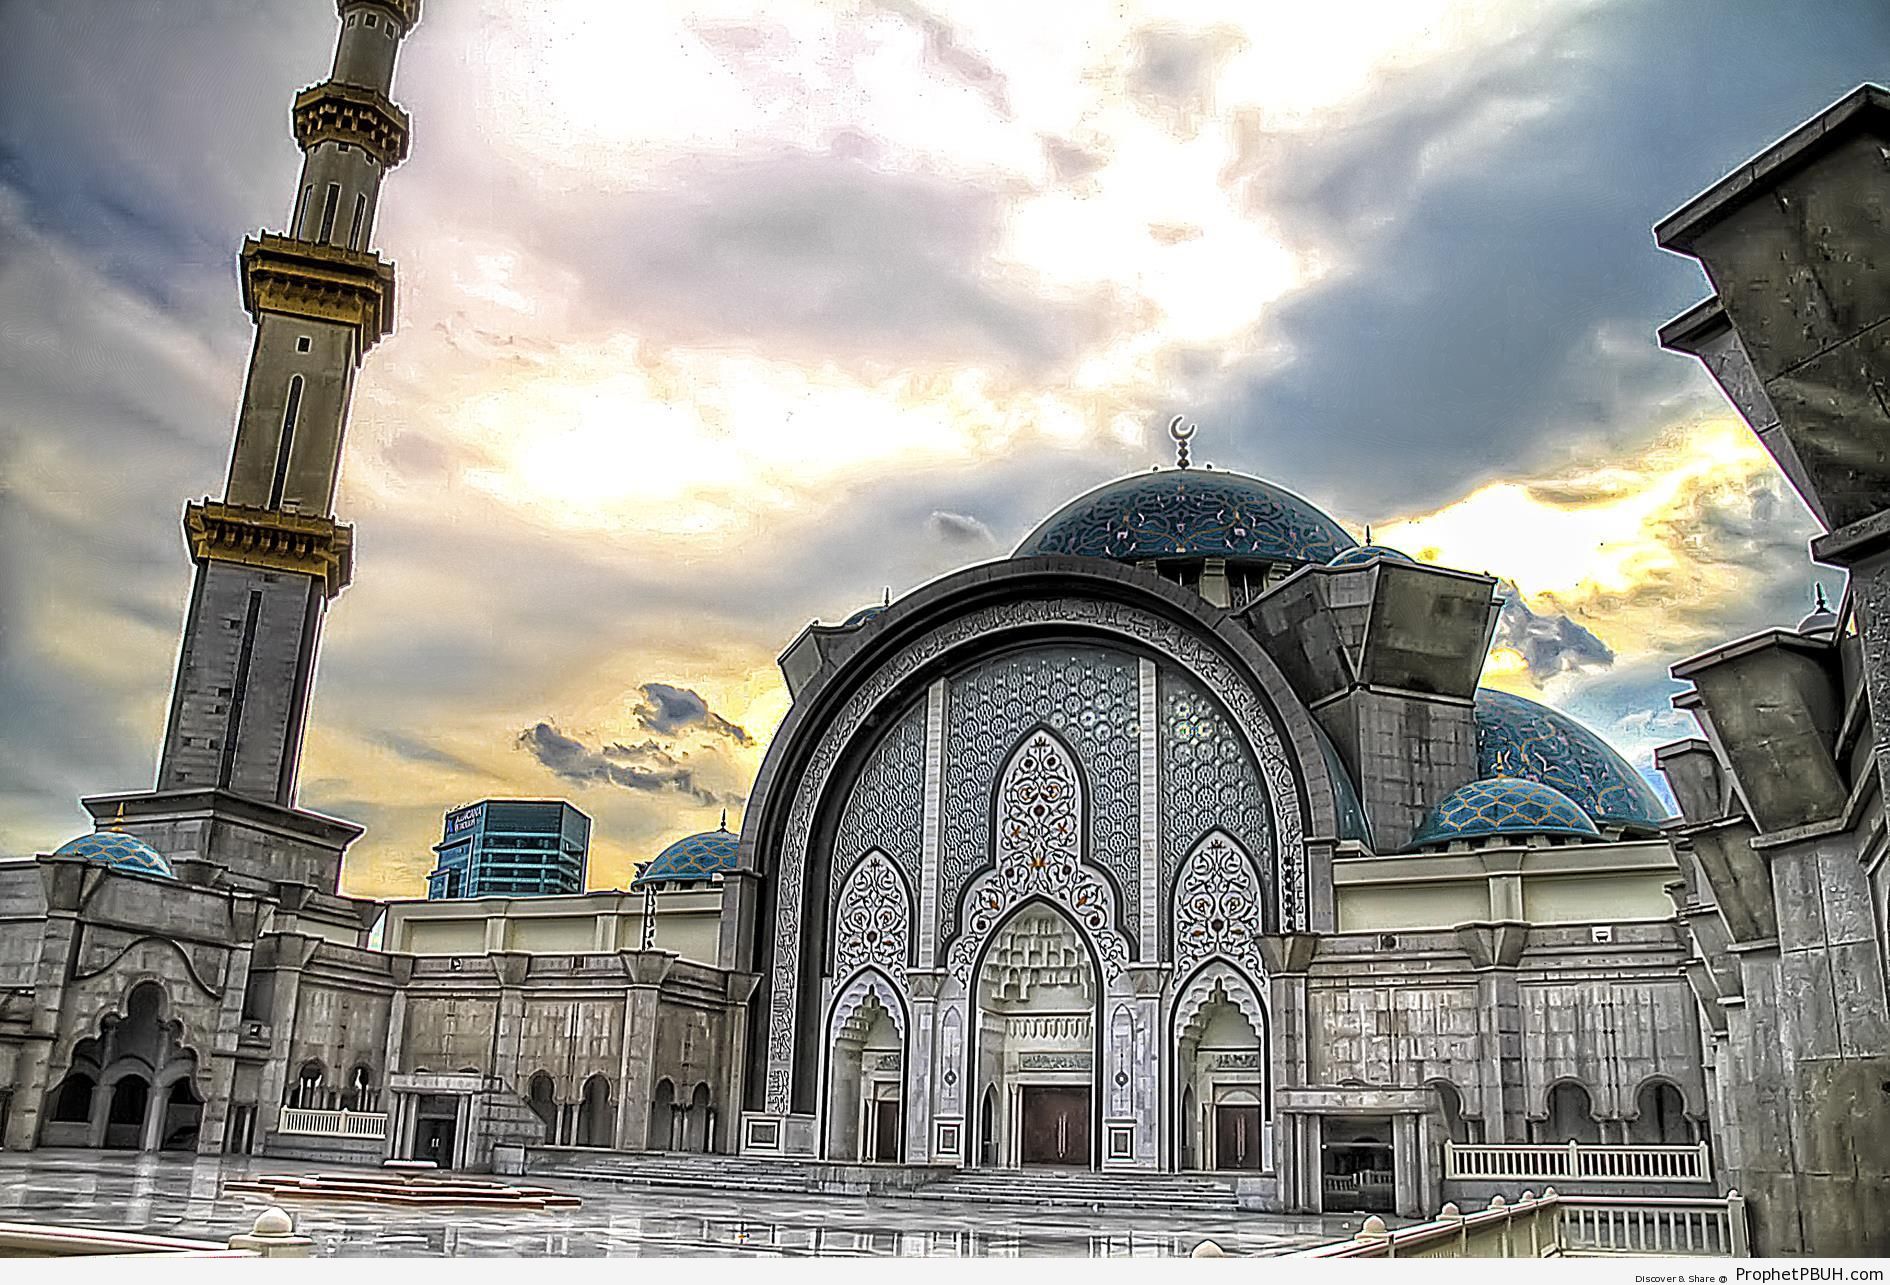 Masjid Wilayah in Kuala Lumpur, Malaysia – Islamic Architecture